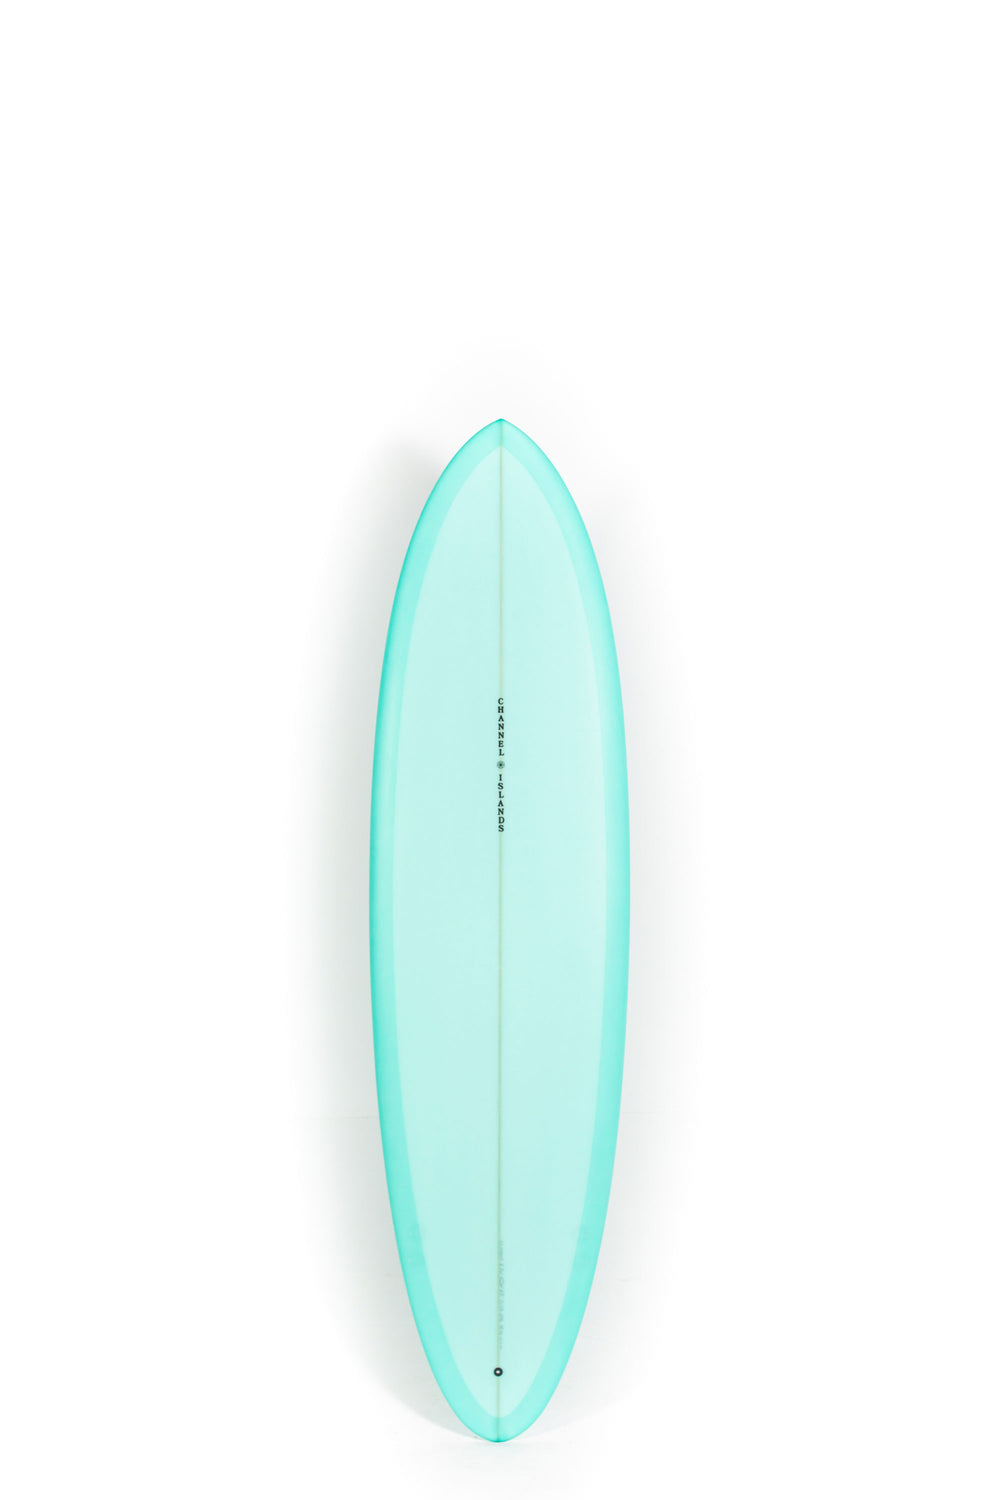 Pukas Surf Shop - Channel Islands - CI MID - 6'8